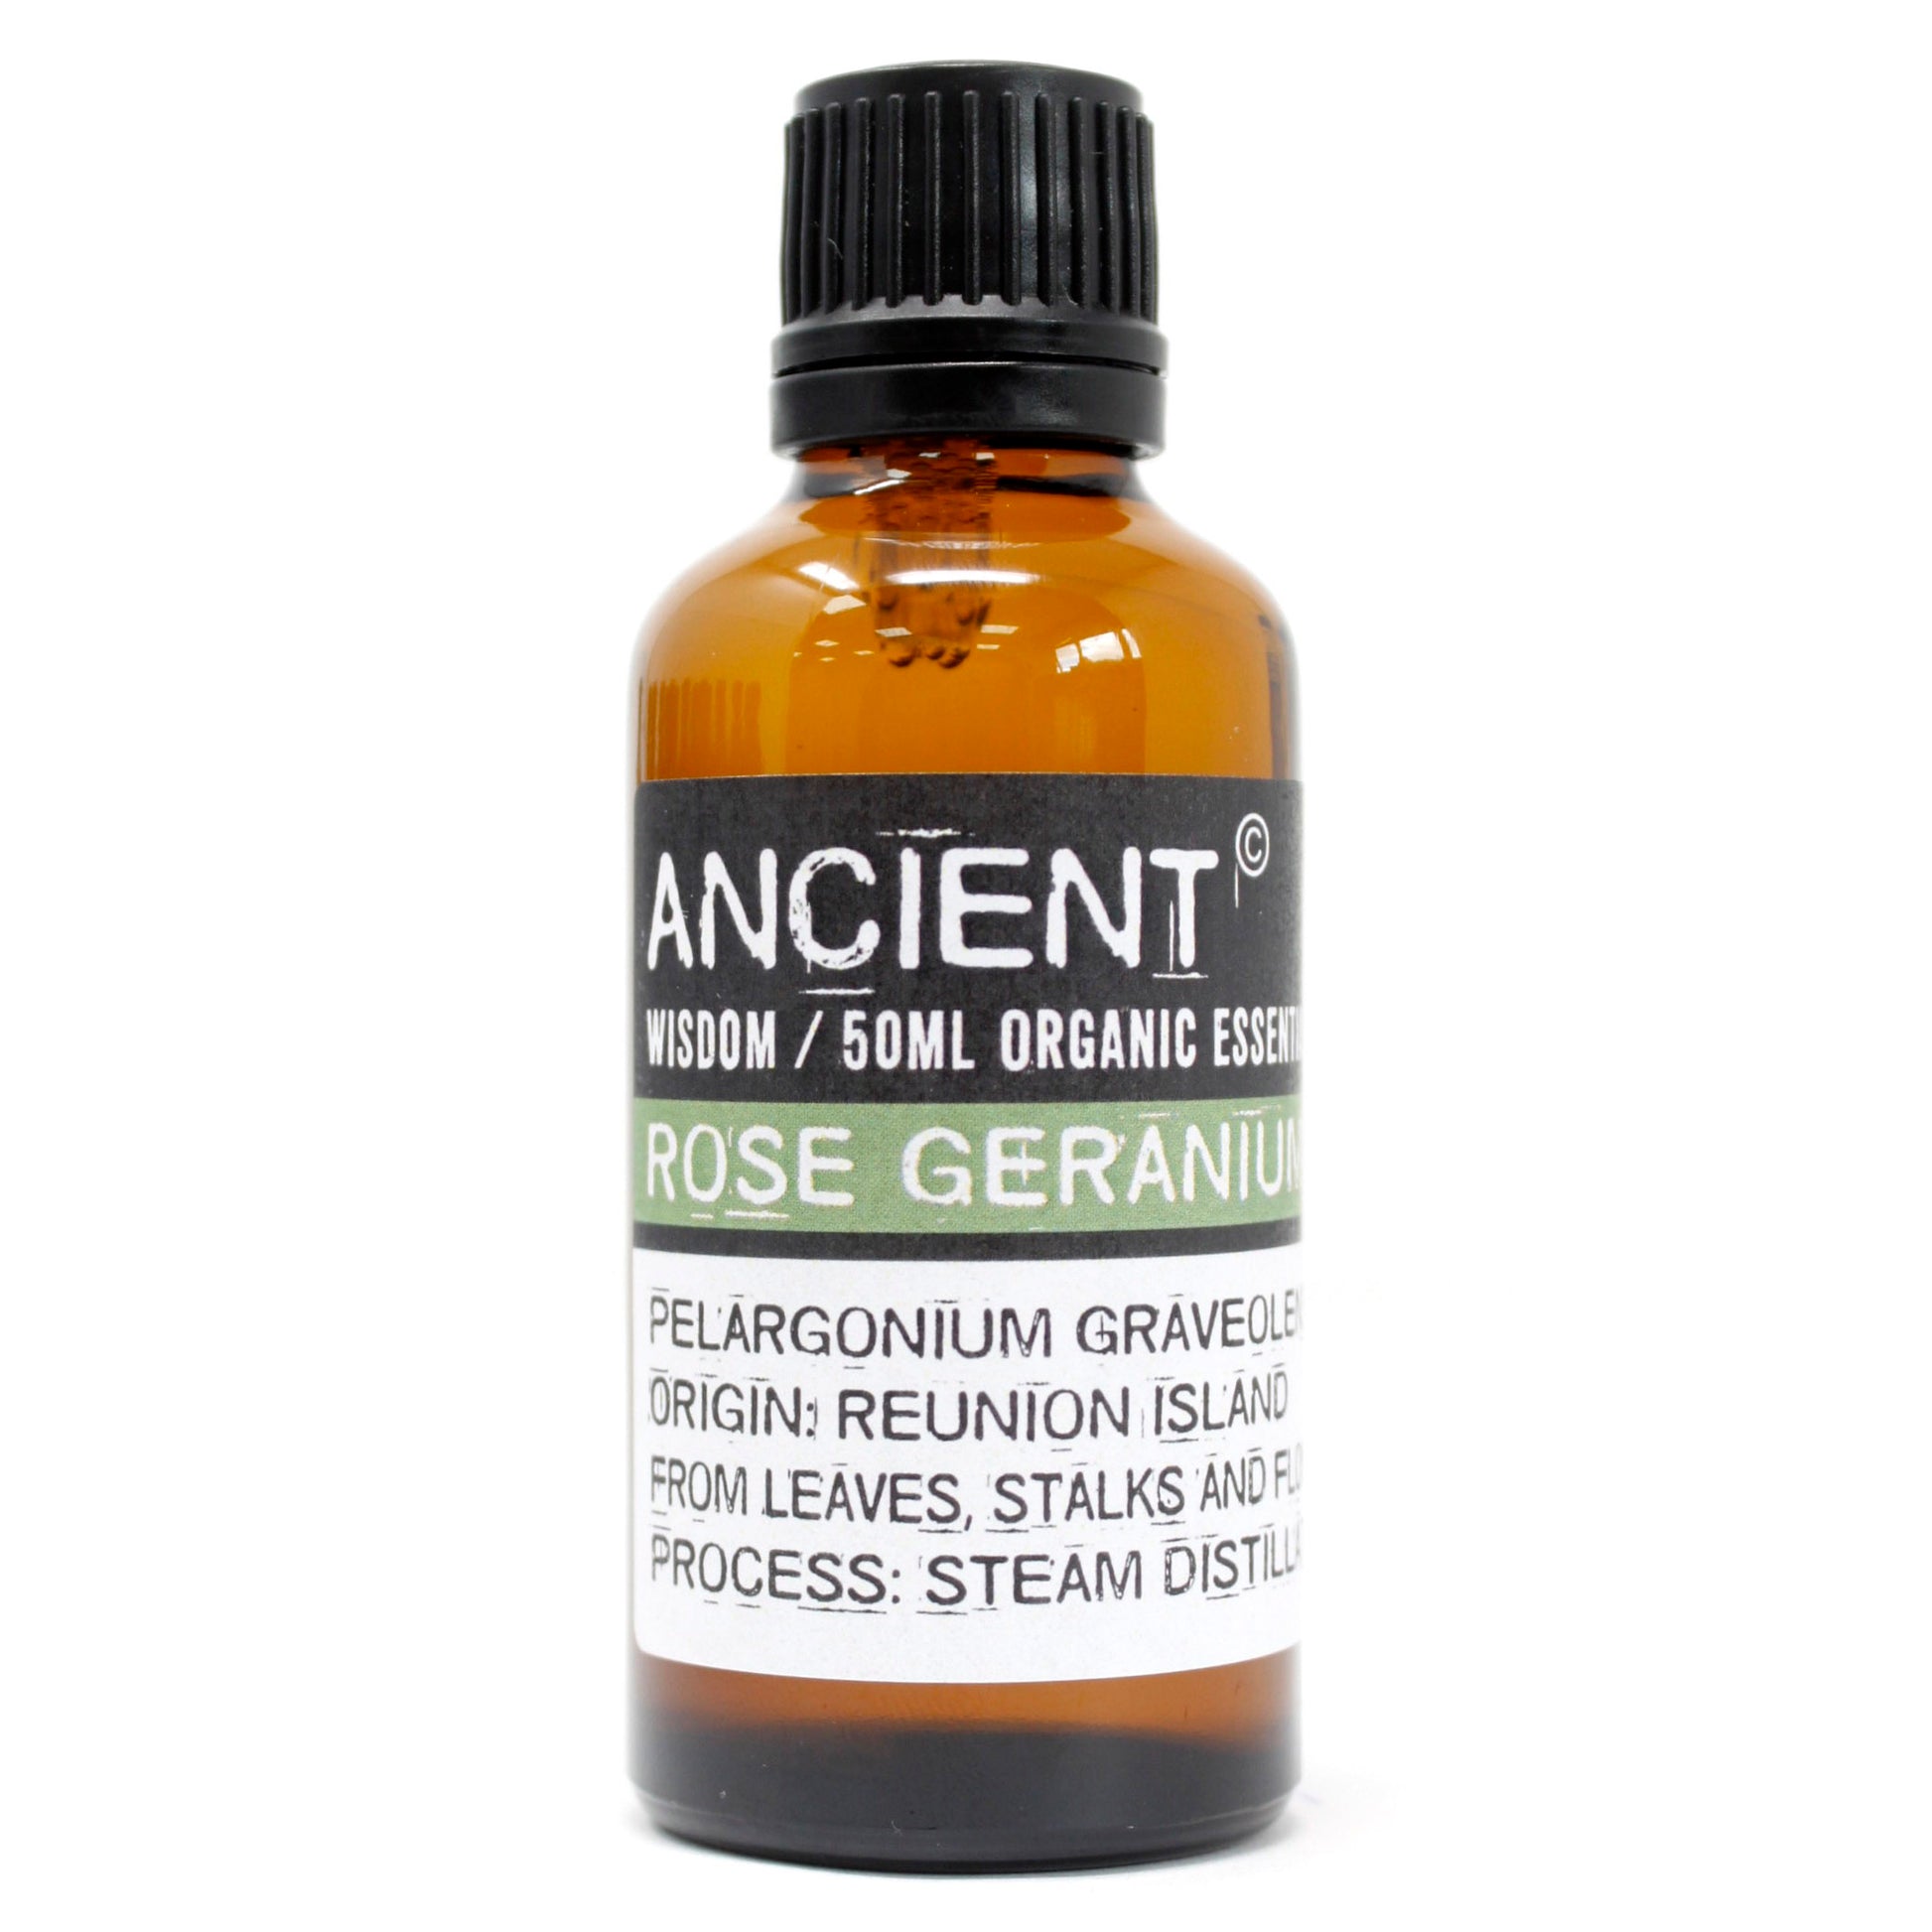 Rose Geranium Organic Essential Oil 50ml - ScentiMelti  Rose Geranium Organic Essential Oil 50ml